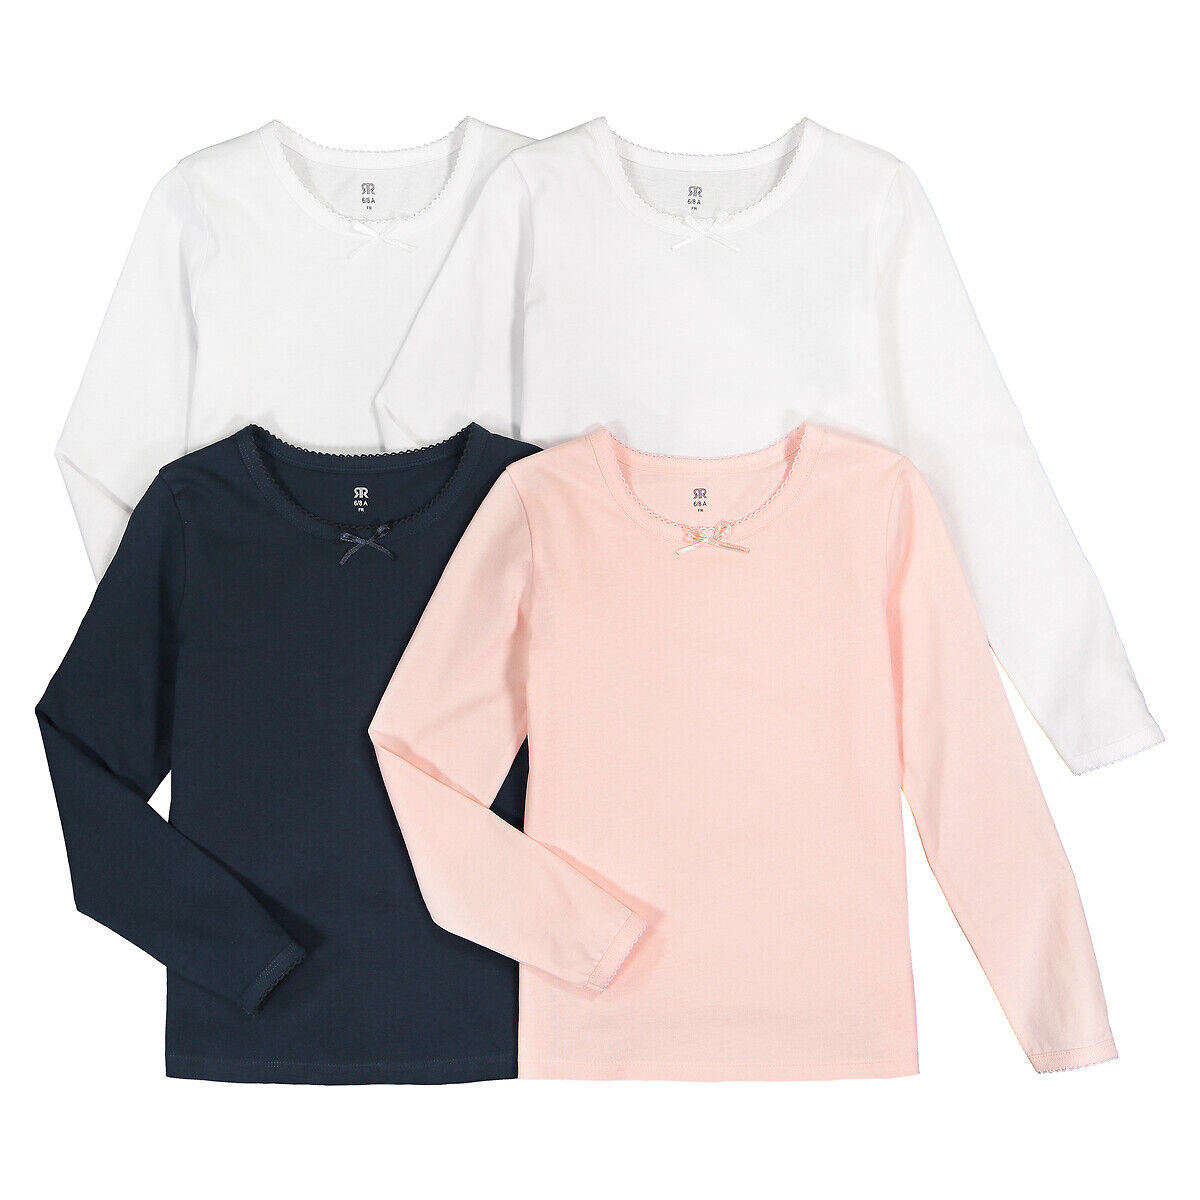 La Redoute Collections Lote de 4 camisolas de interior, em algodão bio, 2-12 anos   Branco + Marinho + Rosa